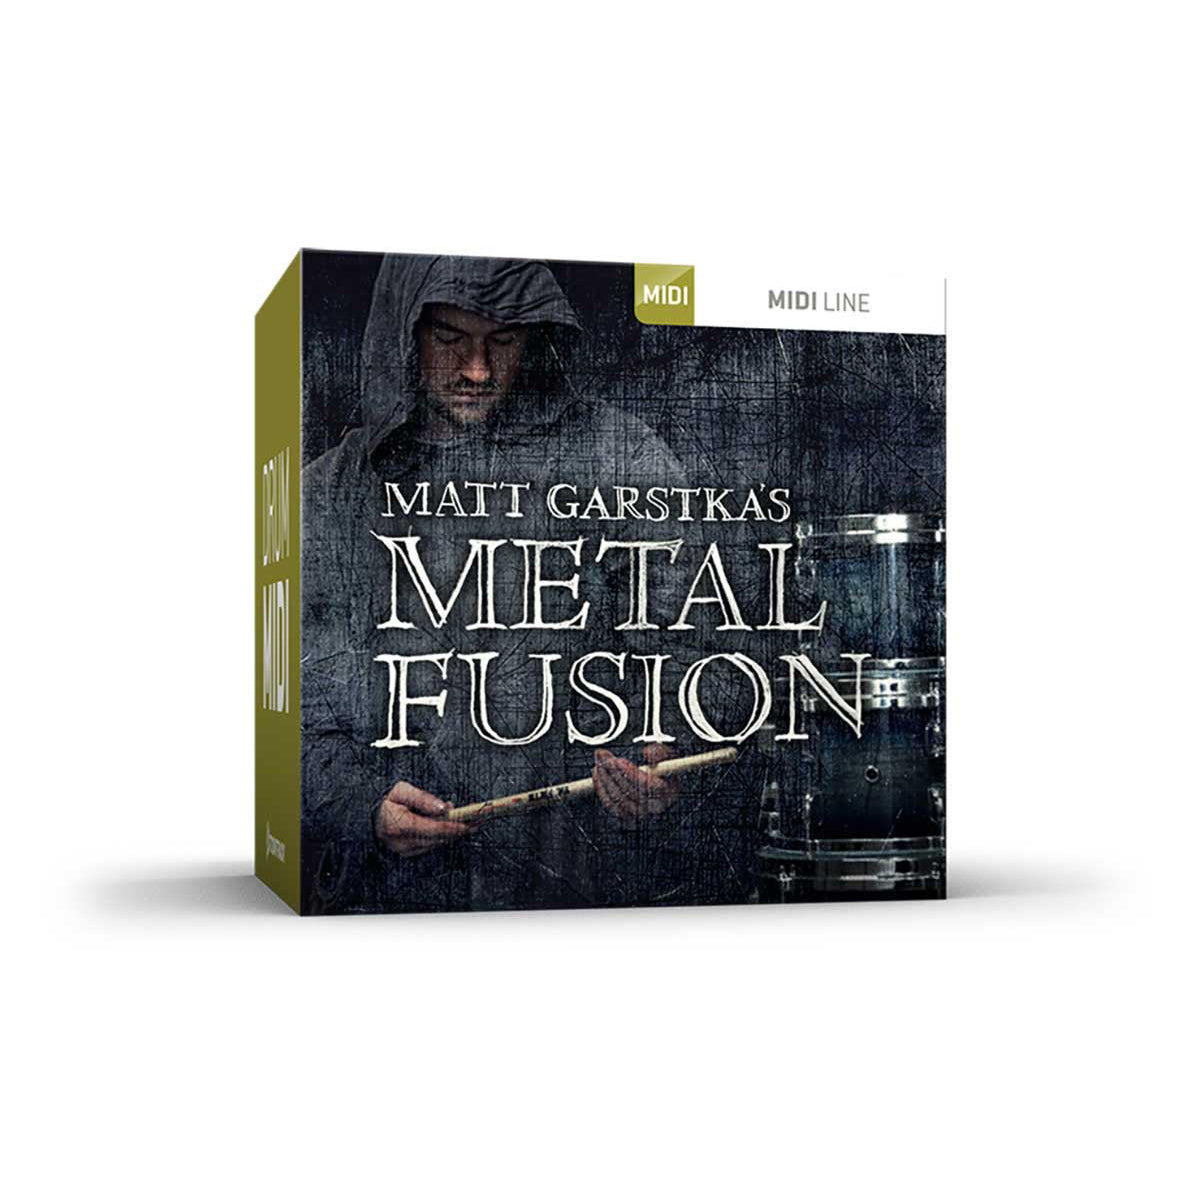 Toontrack Metal Fusion MIDI